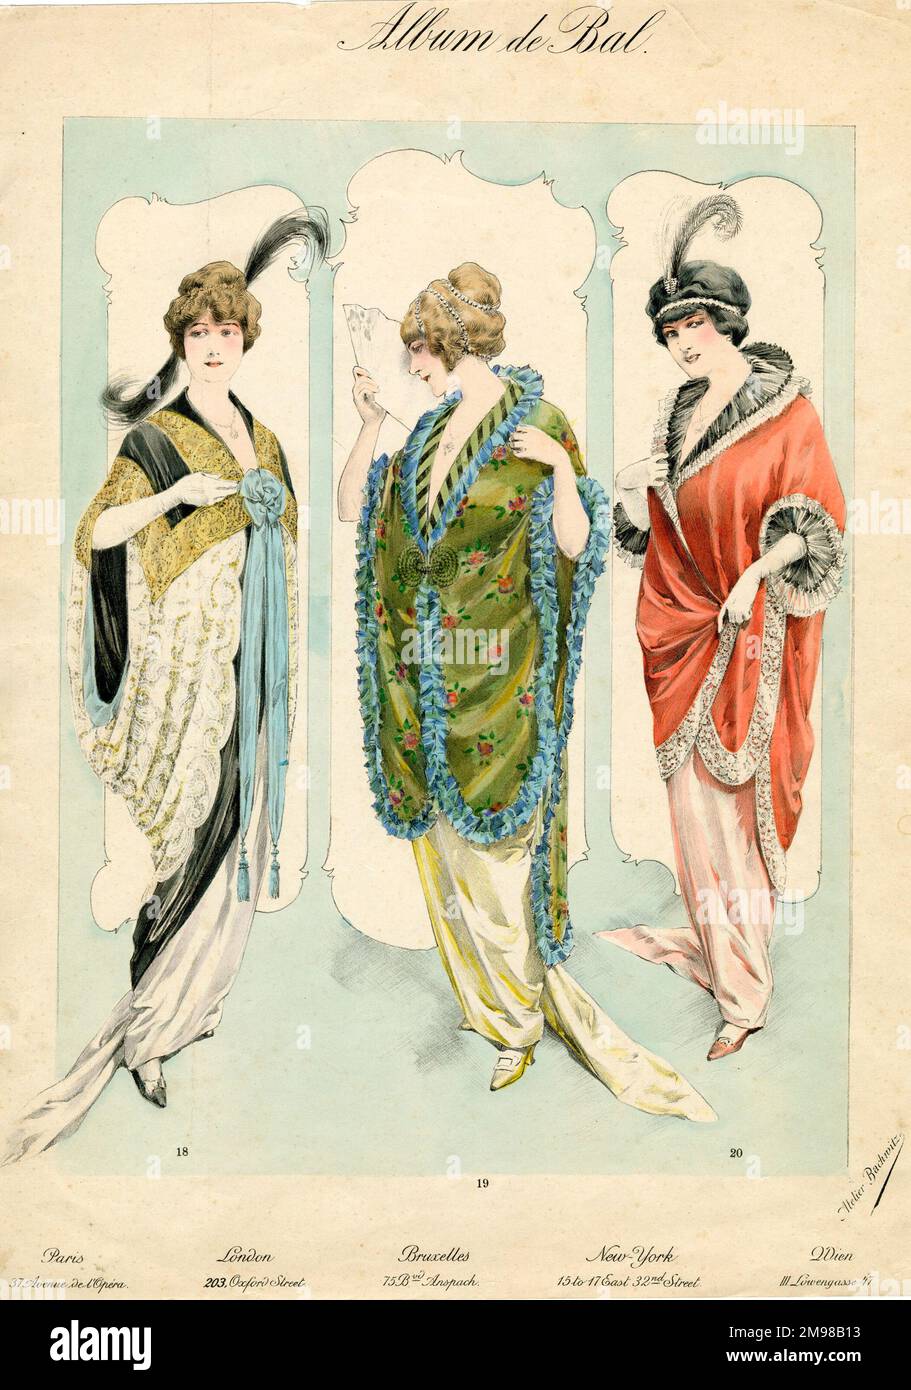 Fashion Plate, Album de Bal, di Atelier Bachwitz, che mostra tre donne all'ultima moda. Foto Stock